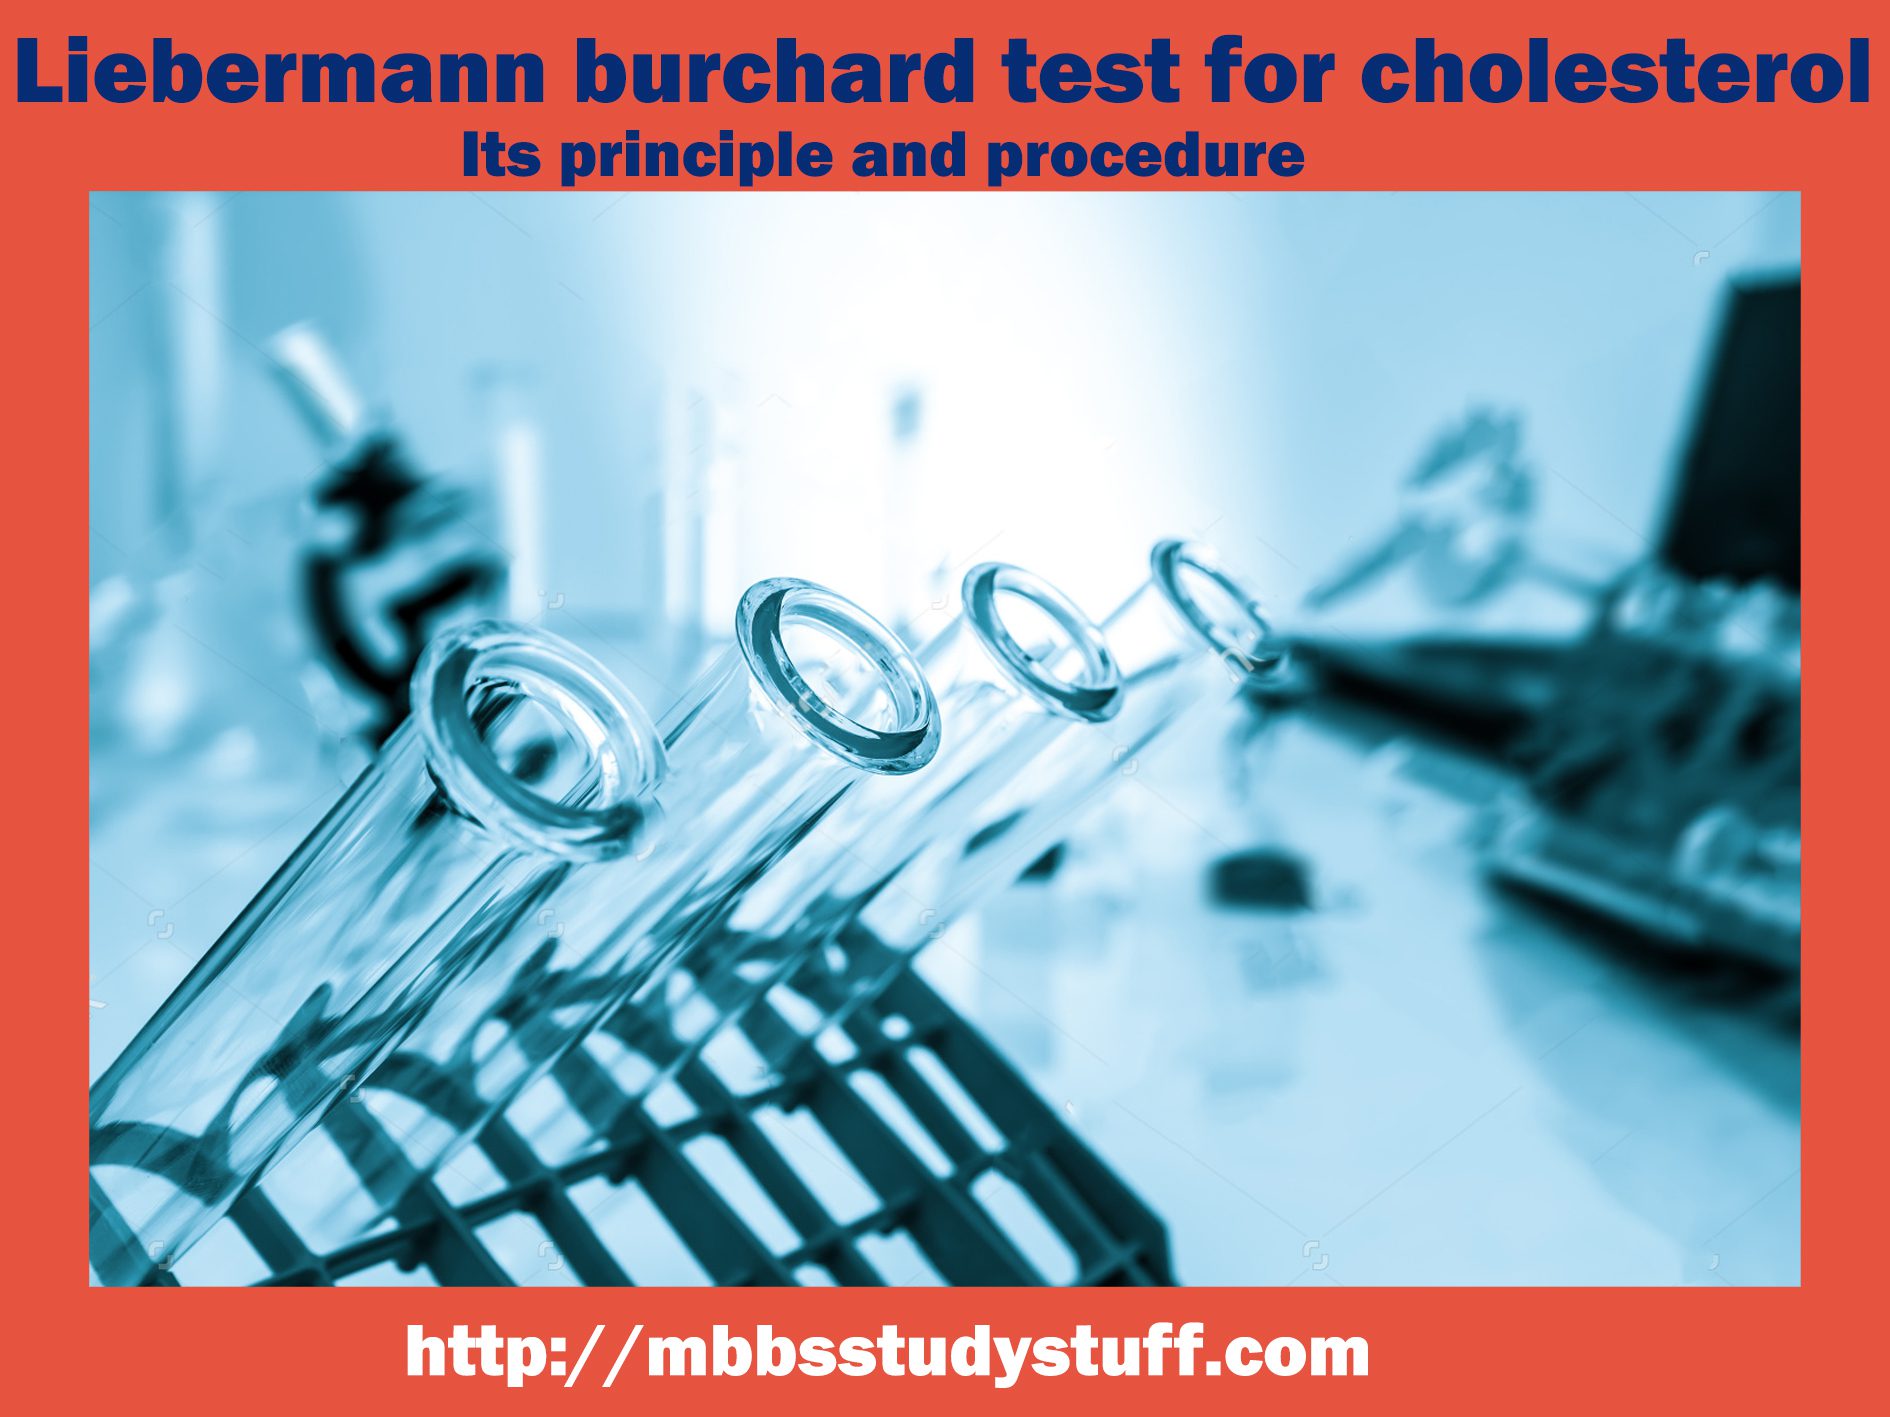 Liebermann burchard test